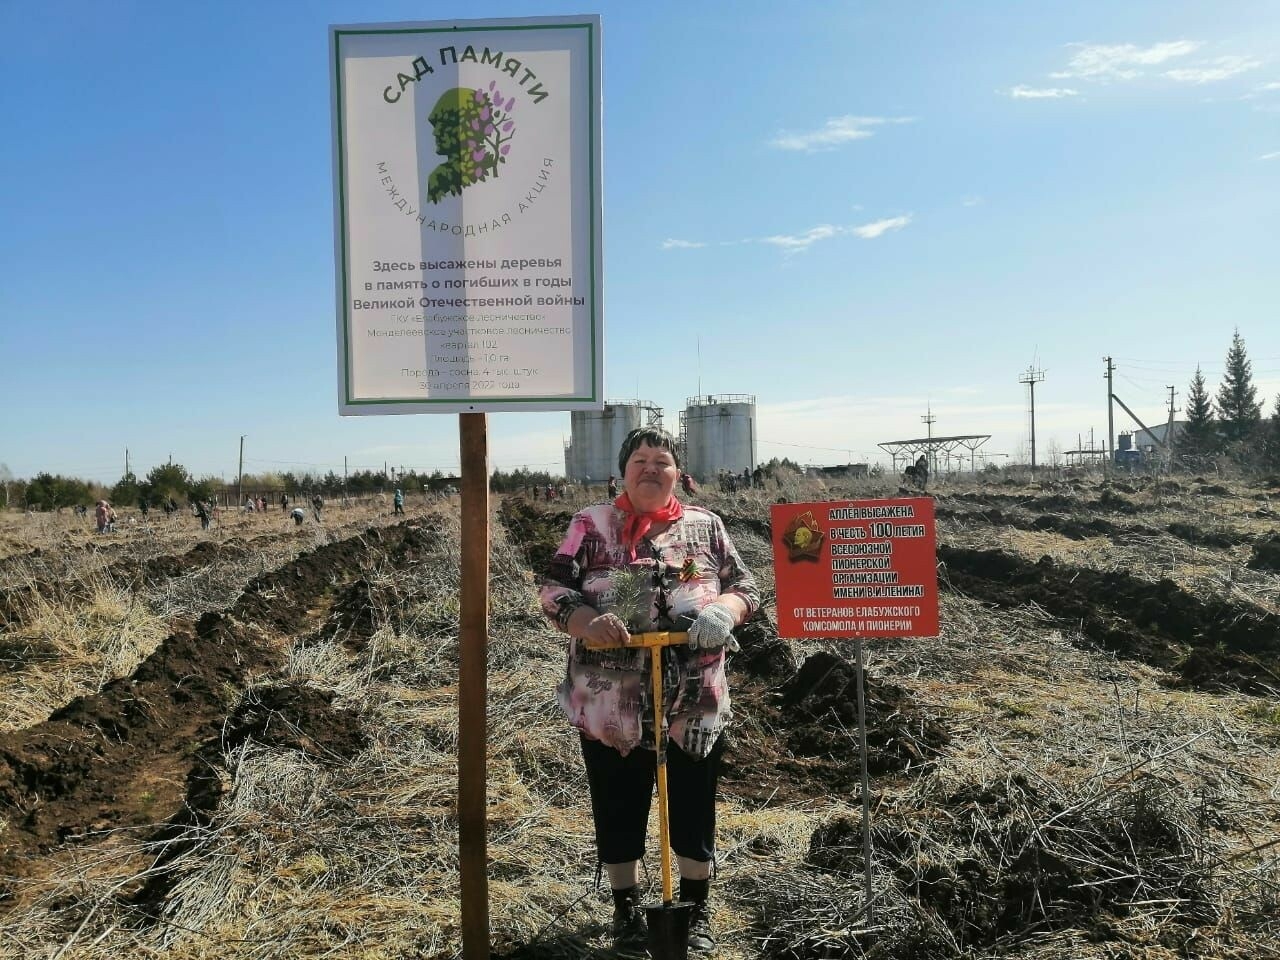 Елабужане высадили 4 тыс. саженцев сосны благодаря акции «Сад памяти»